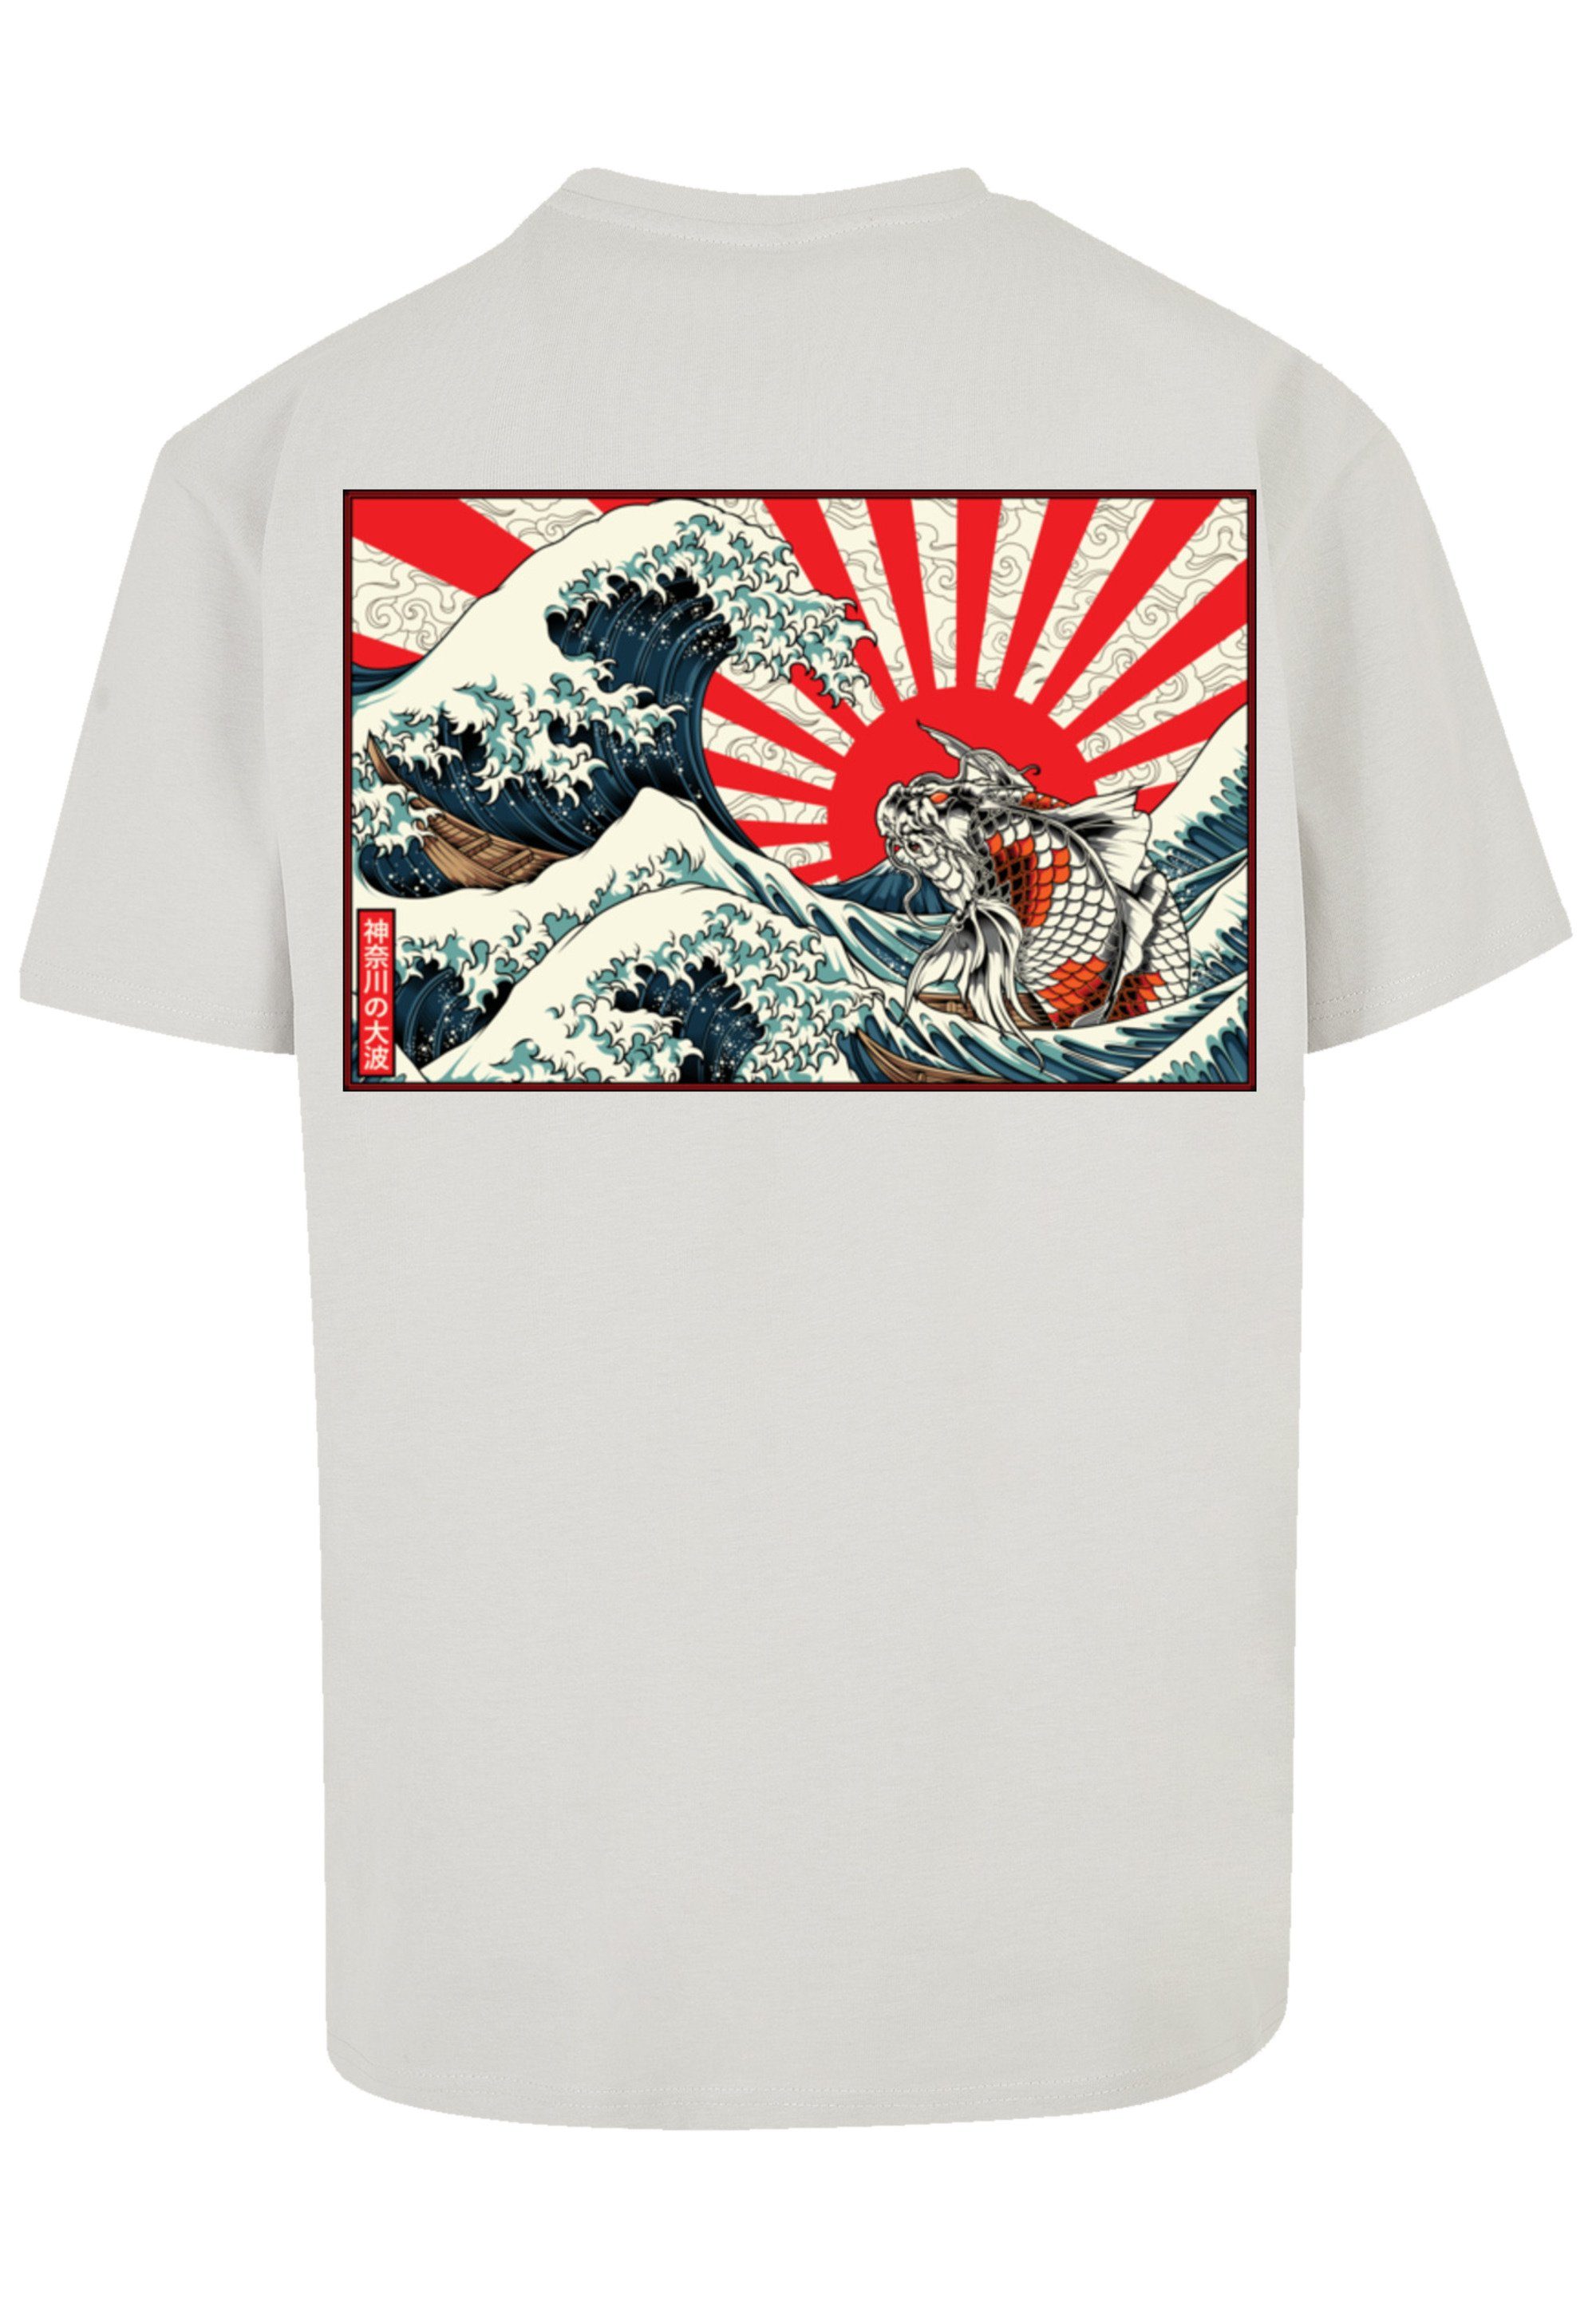 Japan ist T-Shirt cm Das F4NT4STIC und groß Größe trägt 180 M Model Keine Welle Angabe, Kanagawa